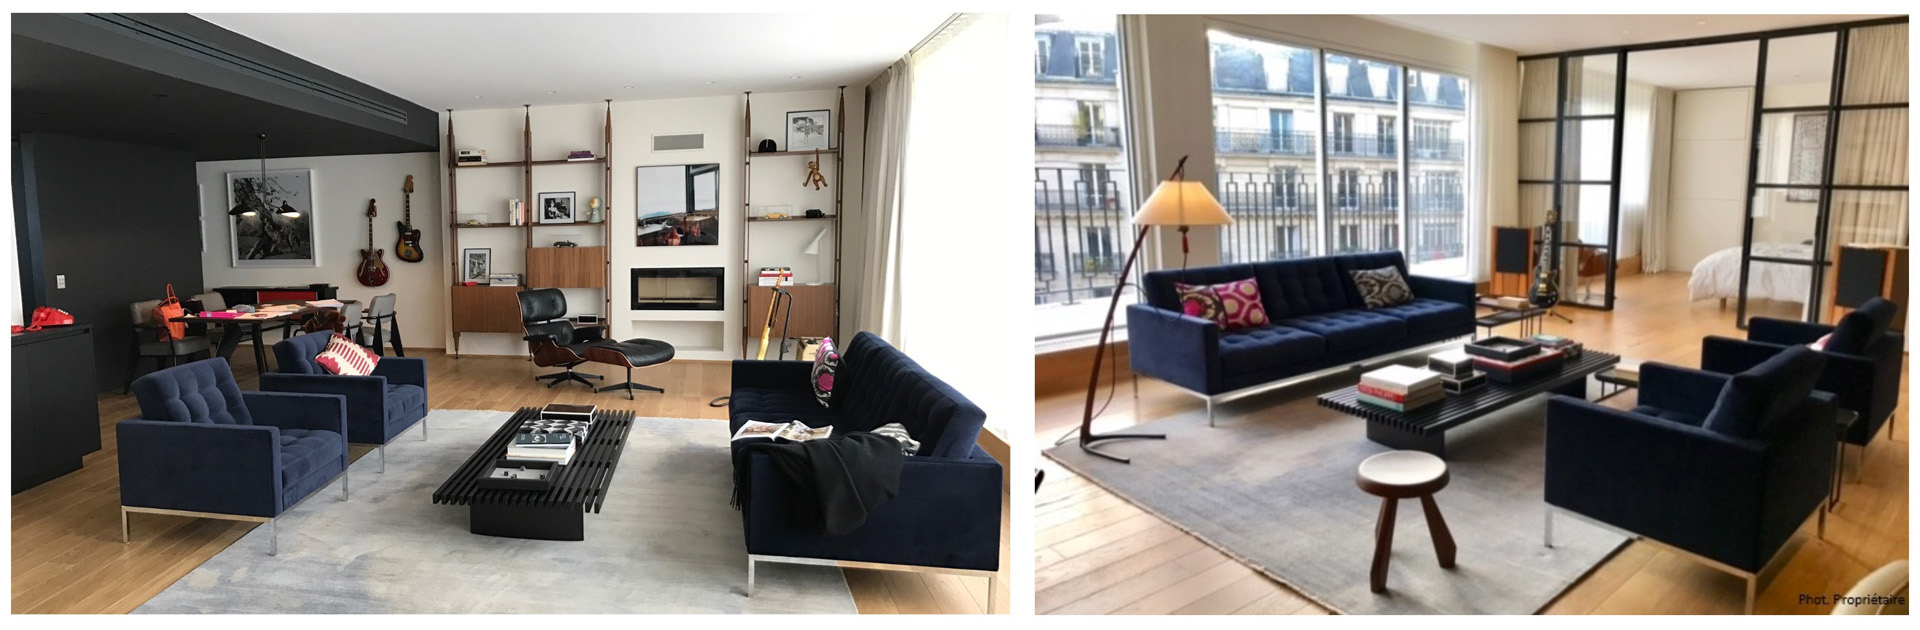 Appartement Porte de la Muette Paris - Salon - Architecture Intérieure et Design - Atelier CM